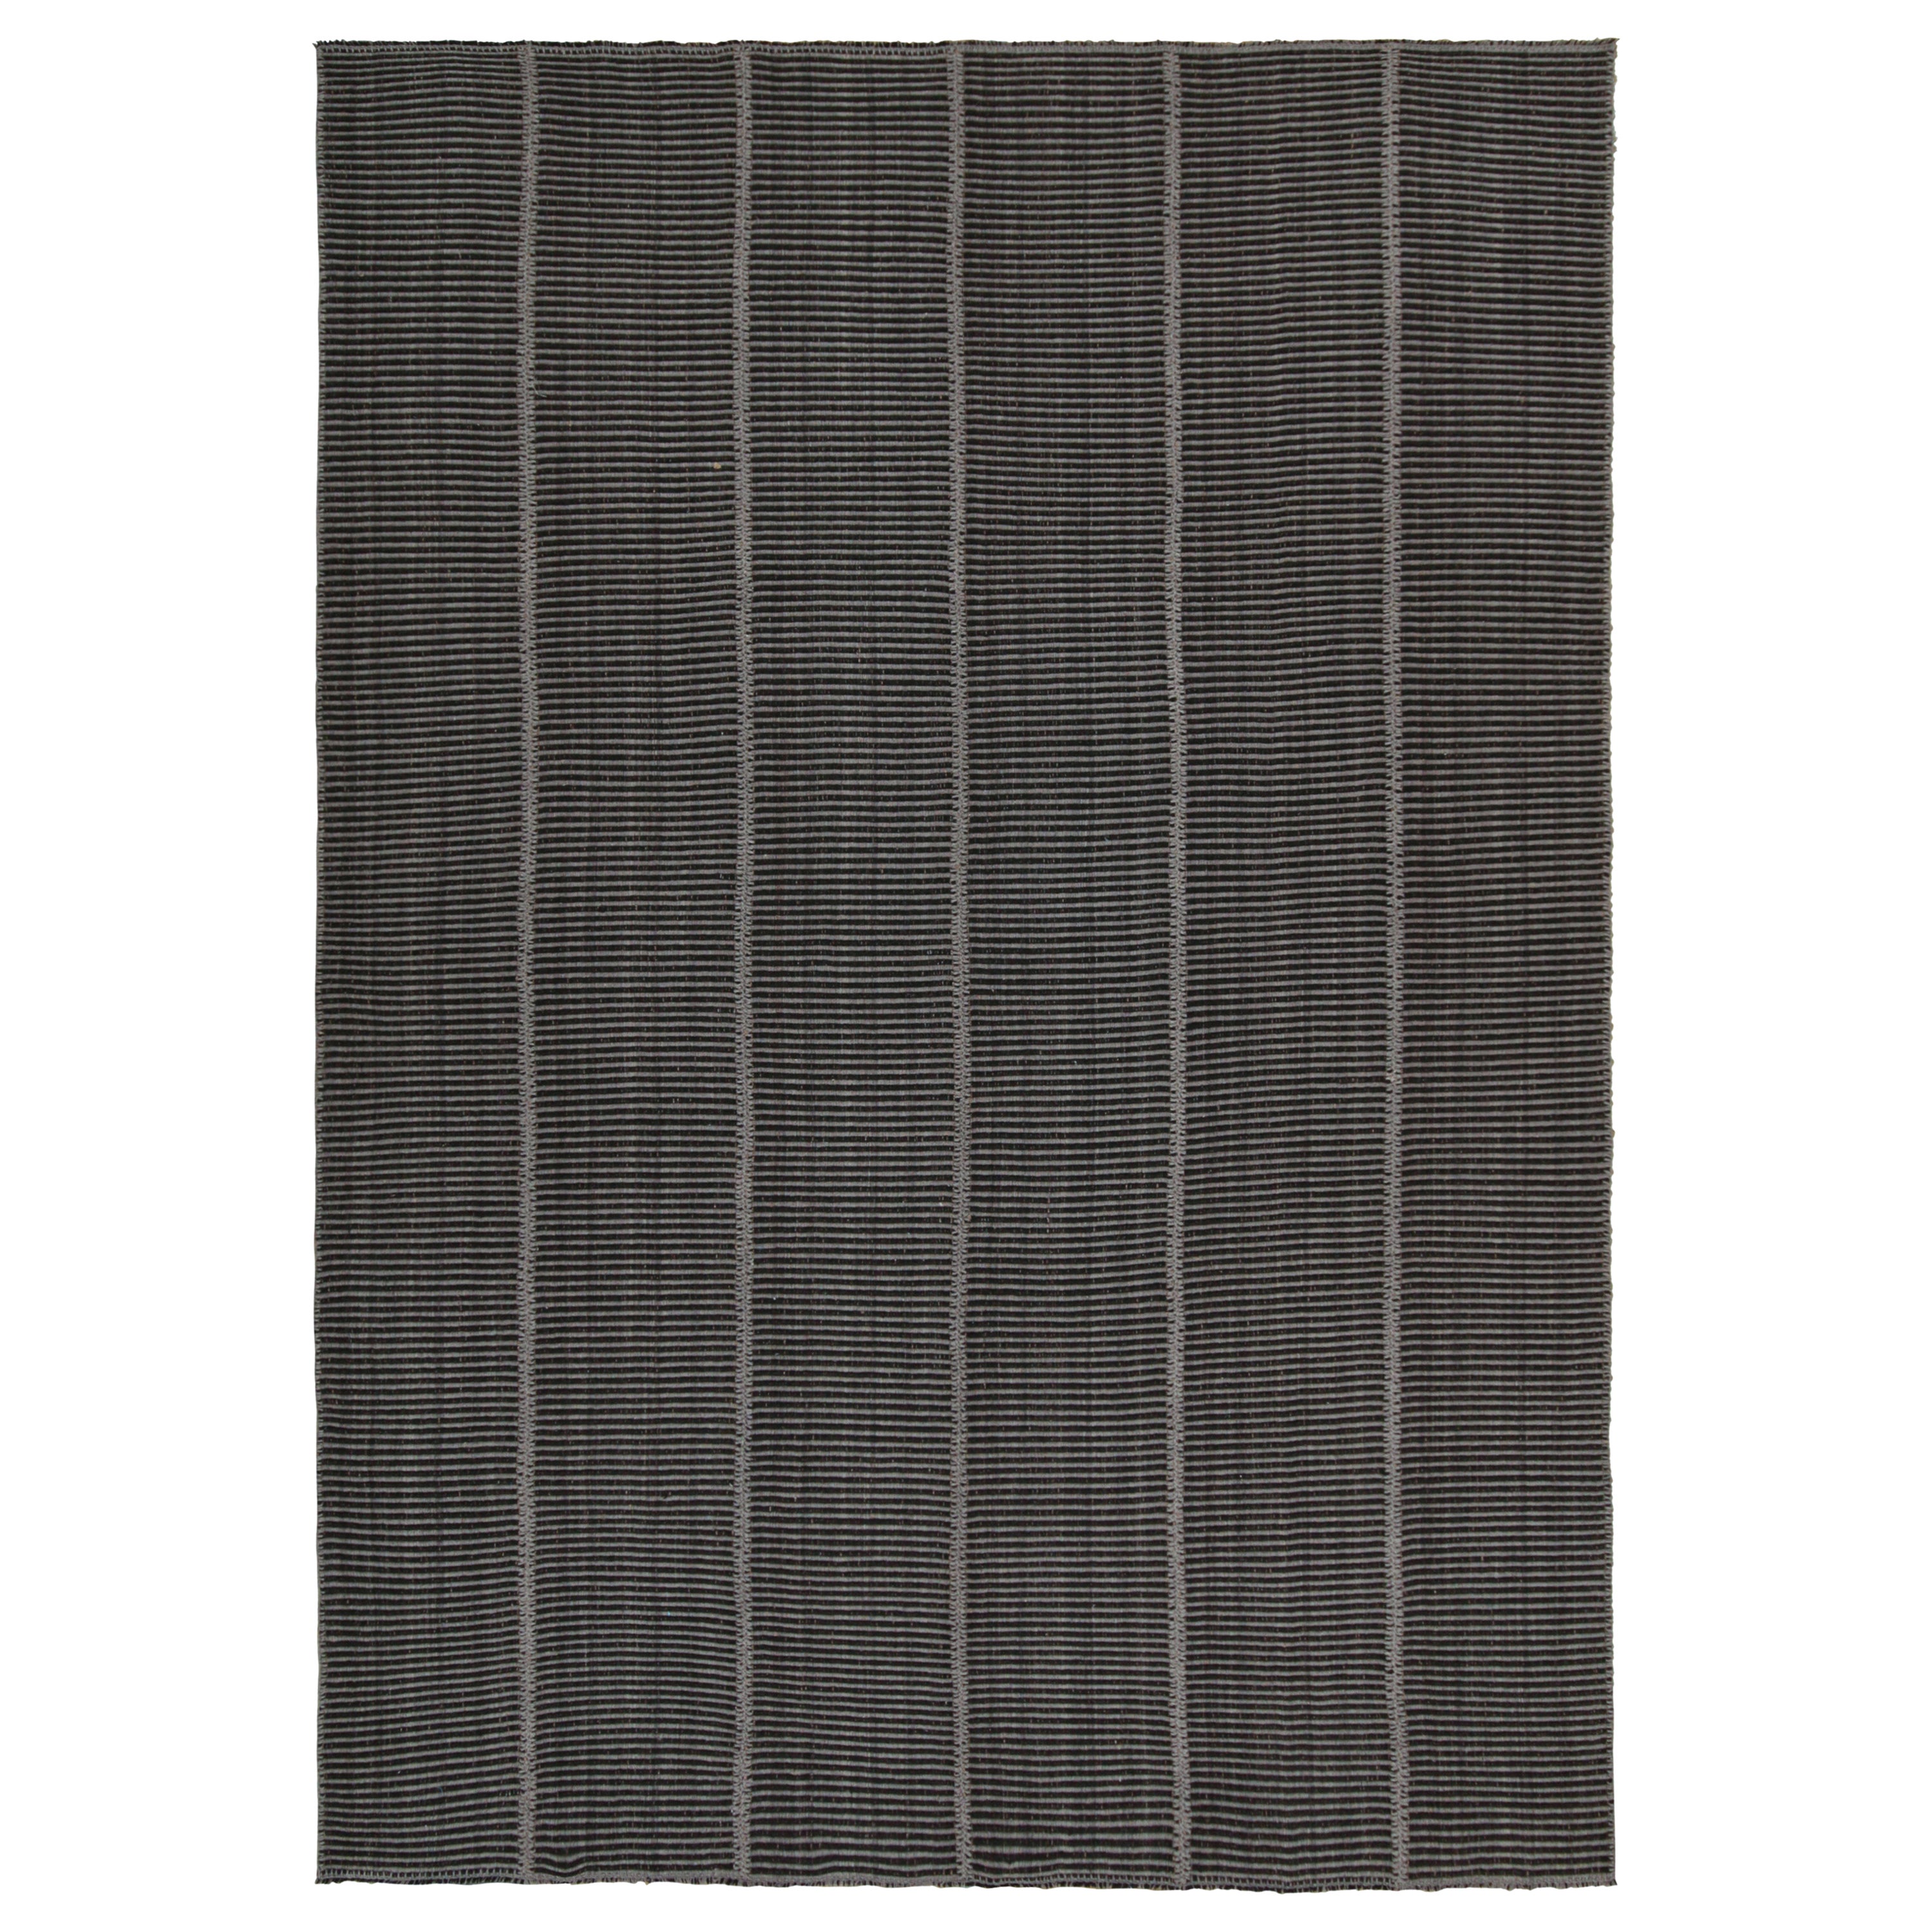 Rug & Kilim’s Contemporary Kilim in Grey & Black Stripes For Sale